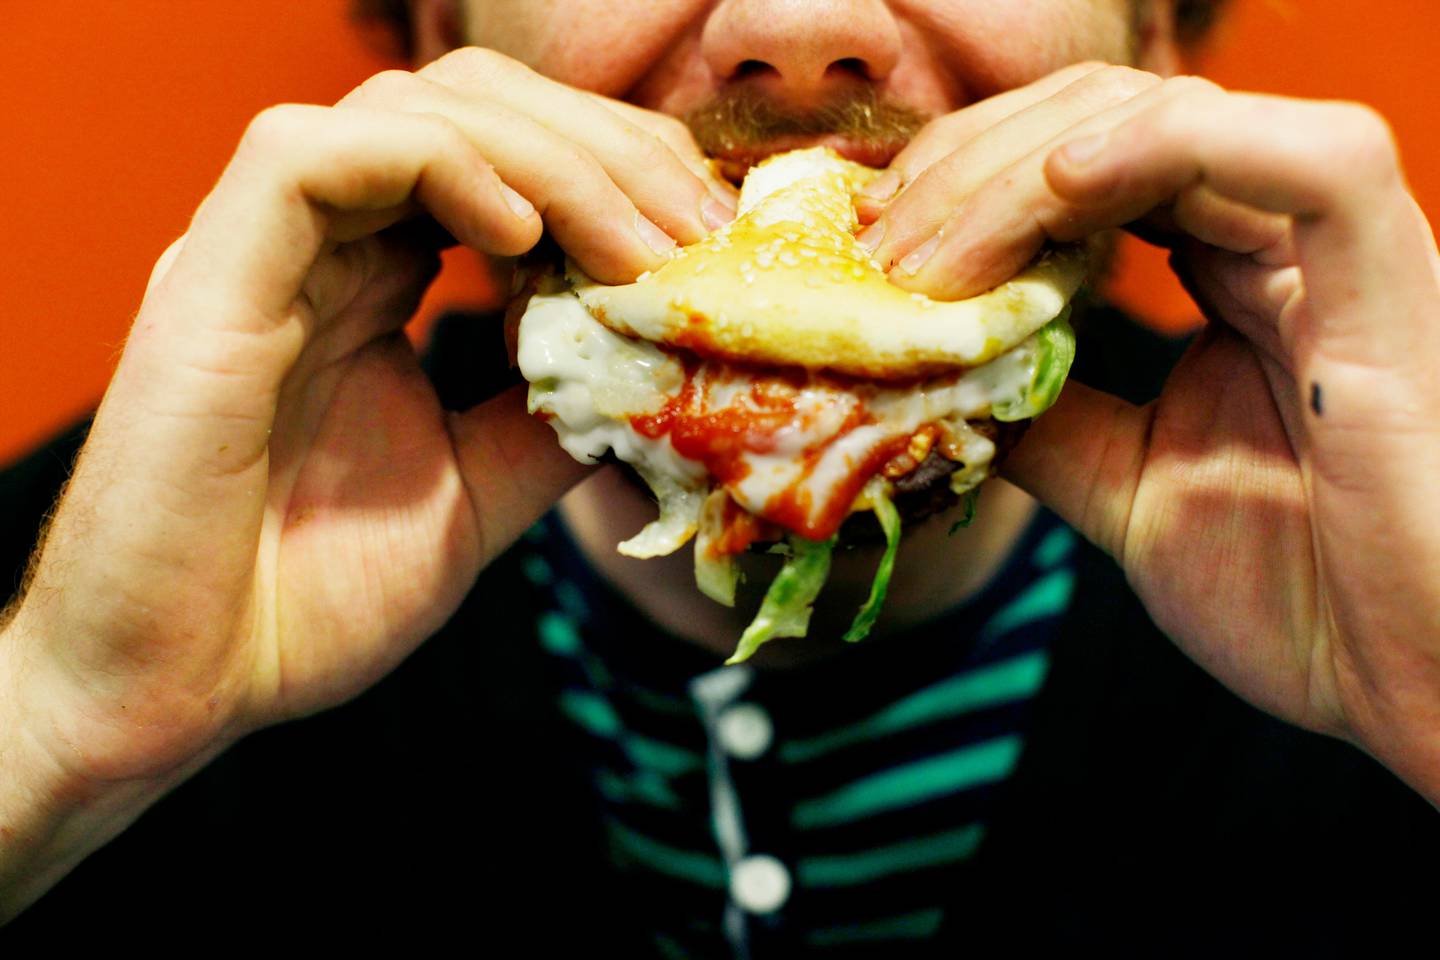 OSLO 20090527:
Fedme og fet mat. Hamburgere og chips er både populært, fett og junkfood. Usunt kosthold. Usunn. Mann med munnen full av hamburger.
Foto: Sara Johannessen / SCANPIX
NB! Modellklarert